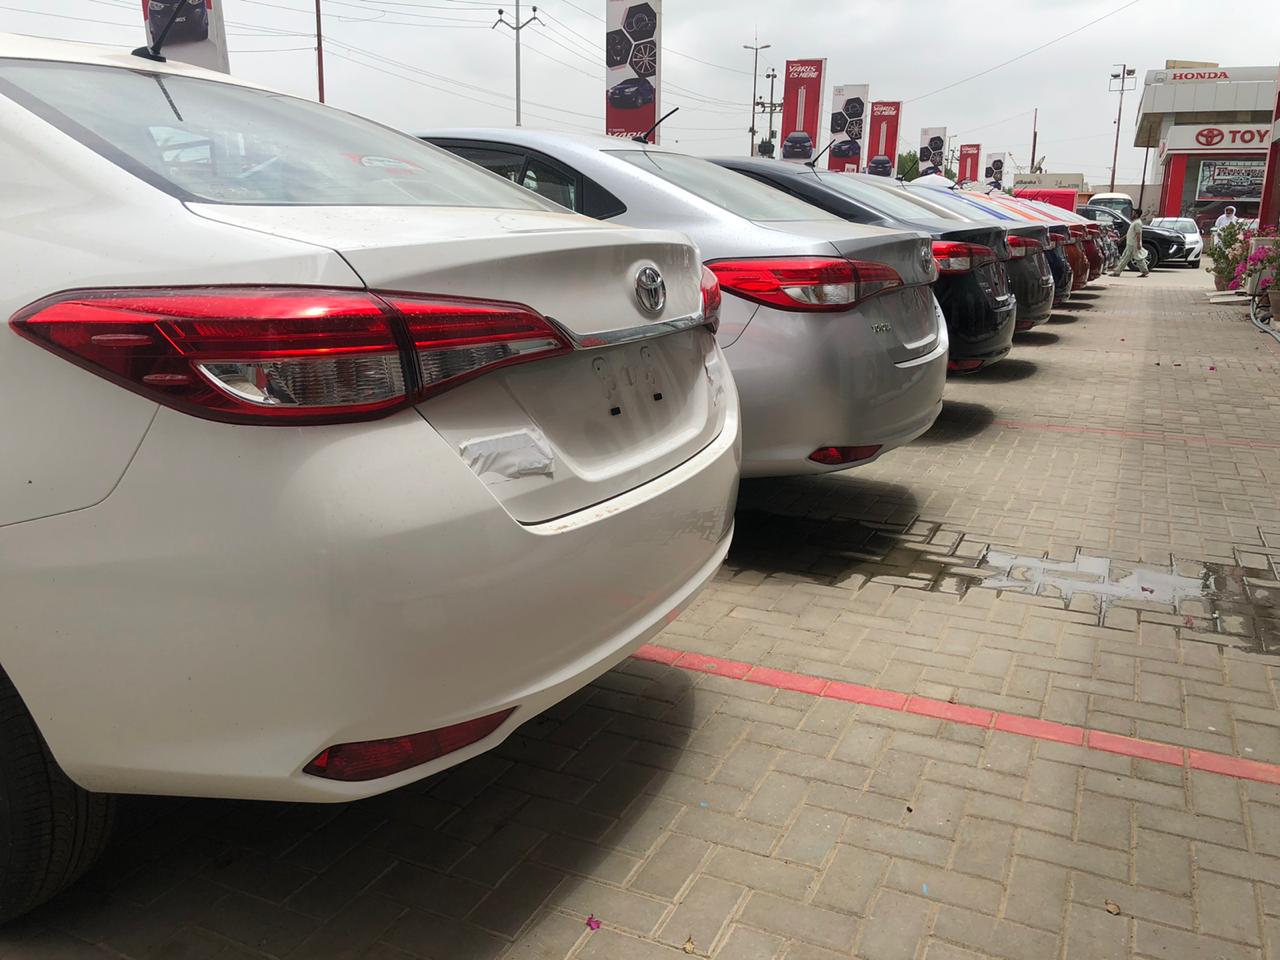 Car Sales Increased by 18% in September 1